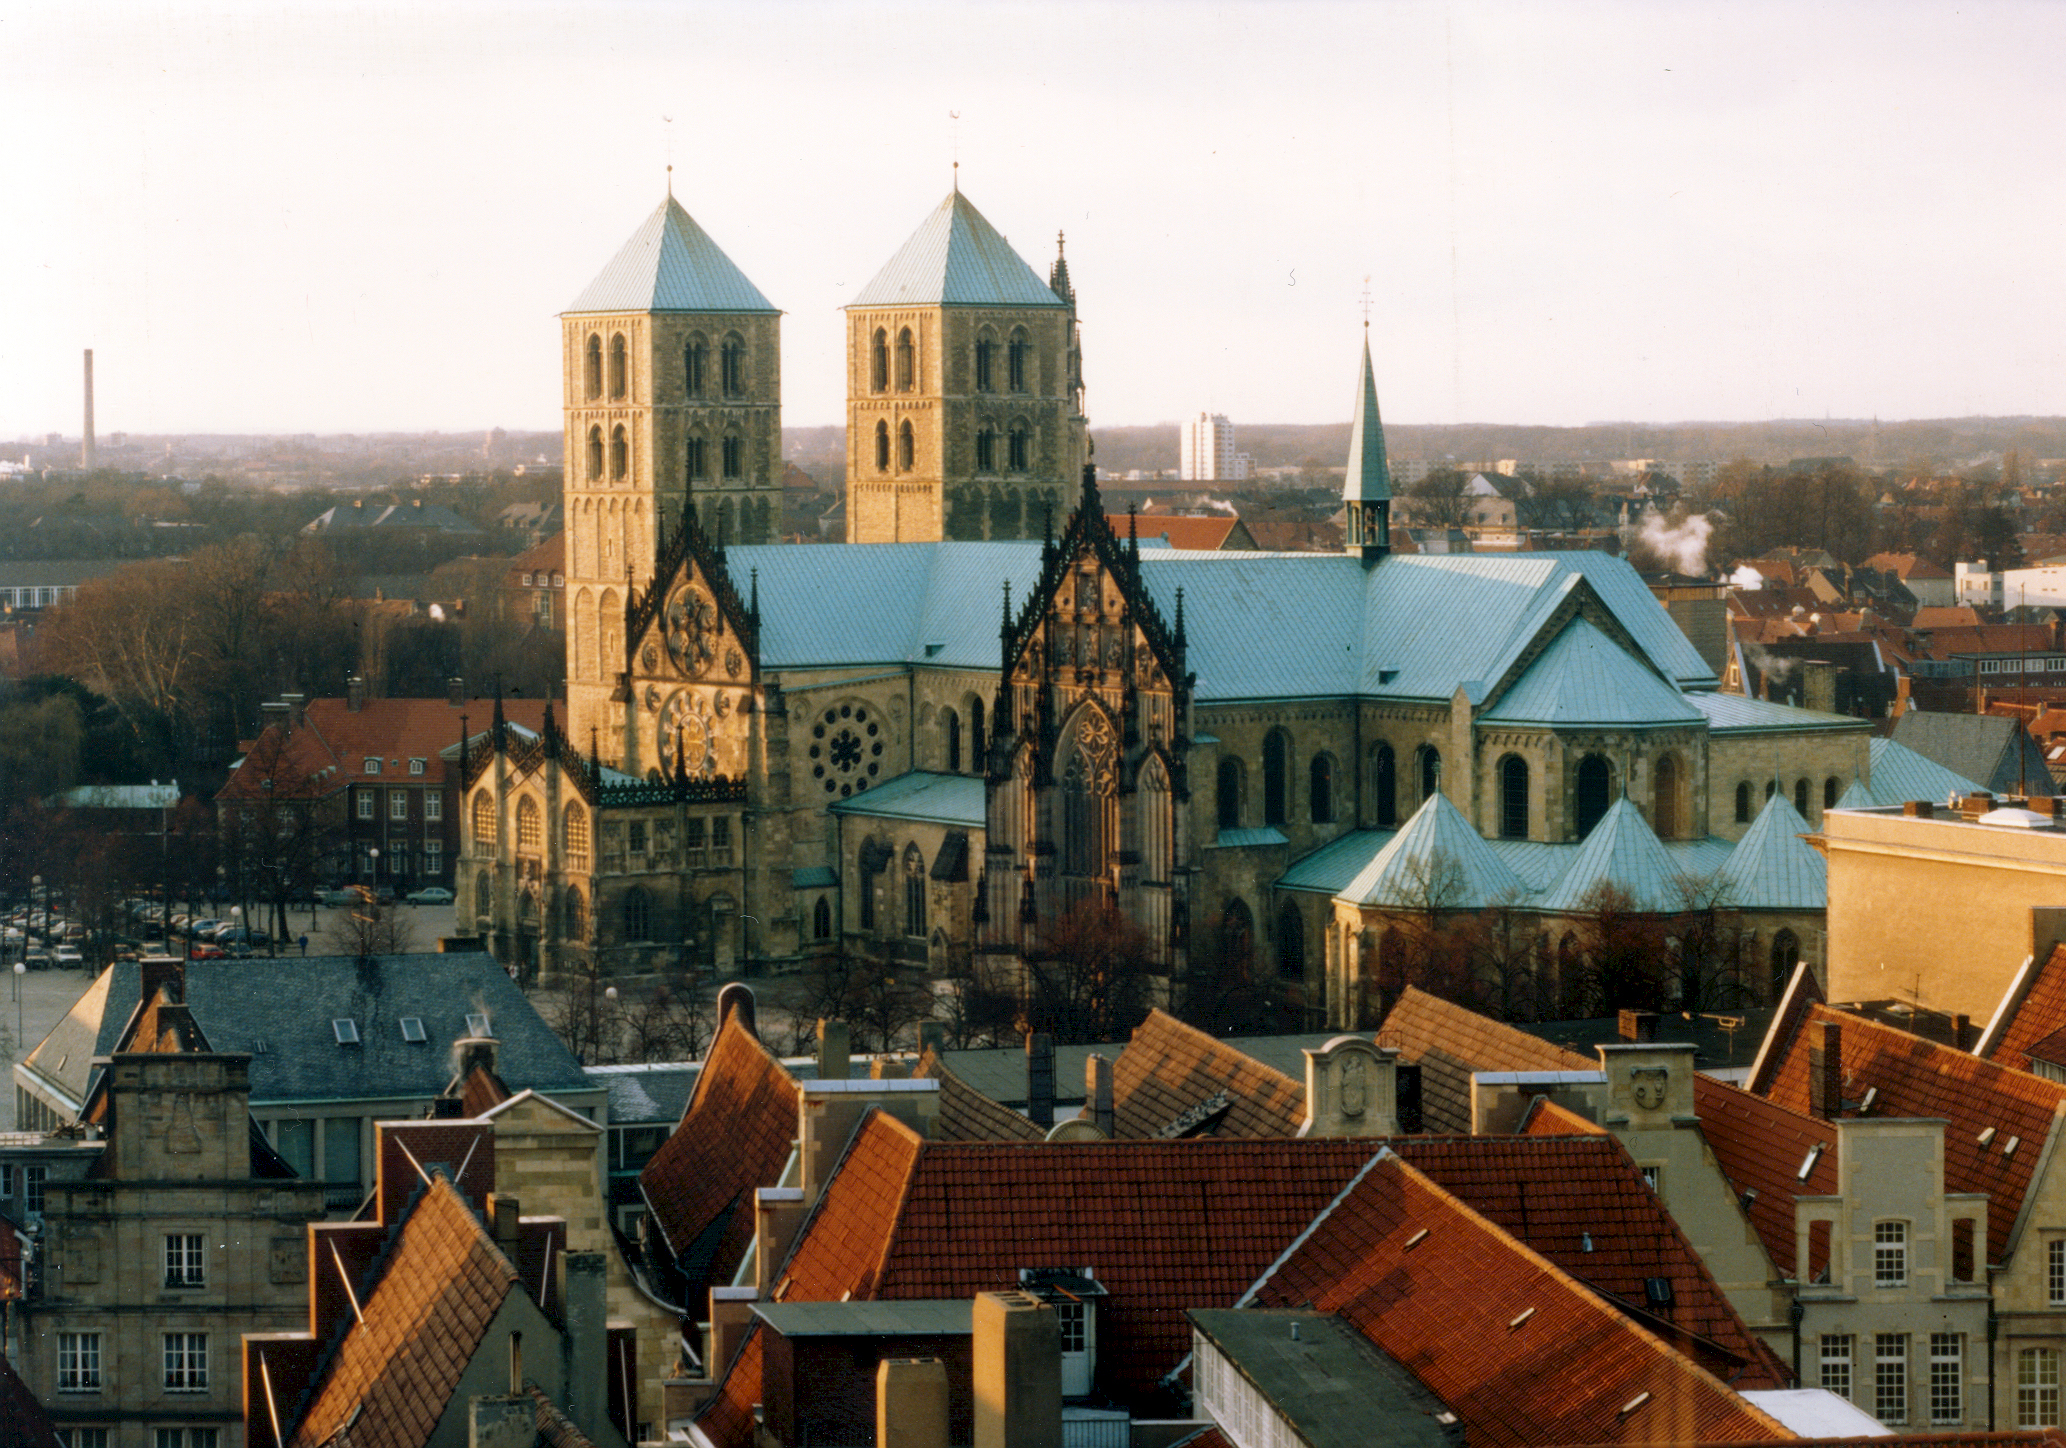 Der Paulusdom in der Altstadt von Münster wurde 1264 dem Apostel Paulus geweiht.
